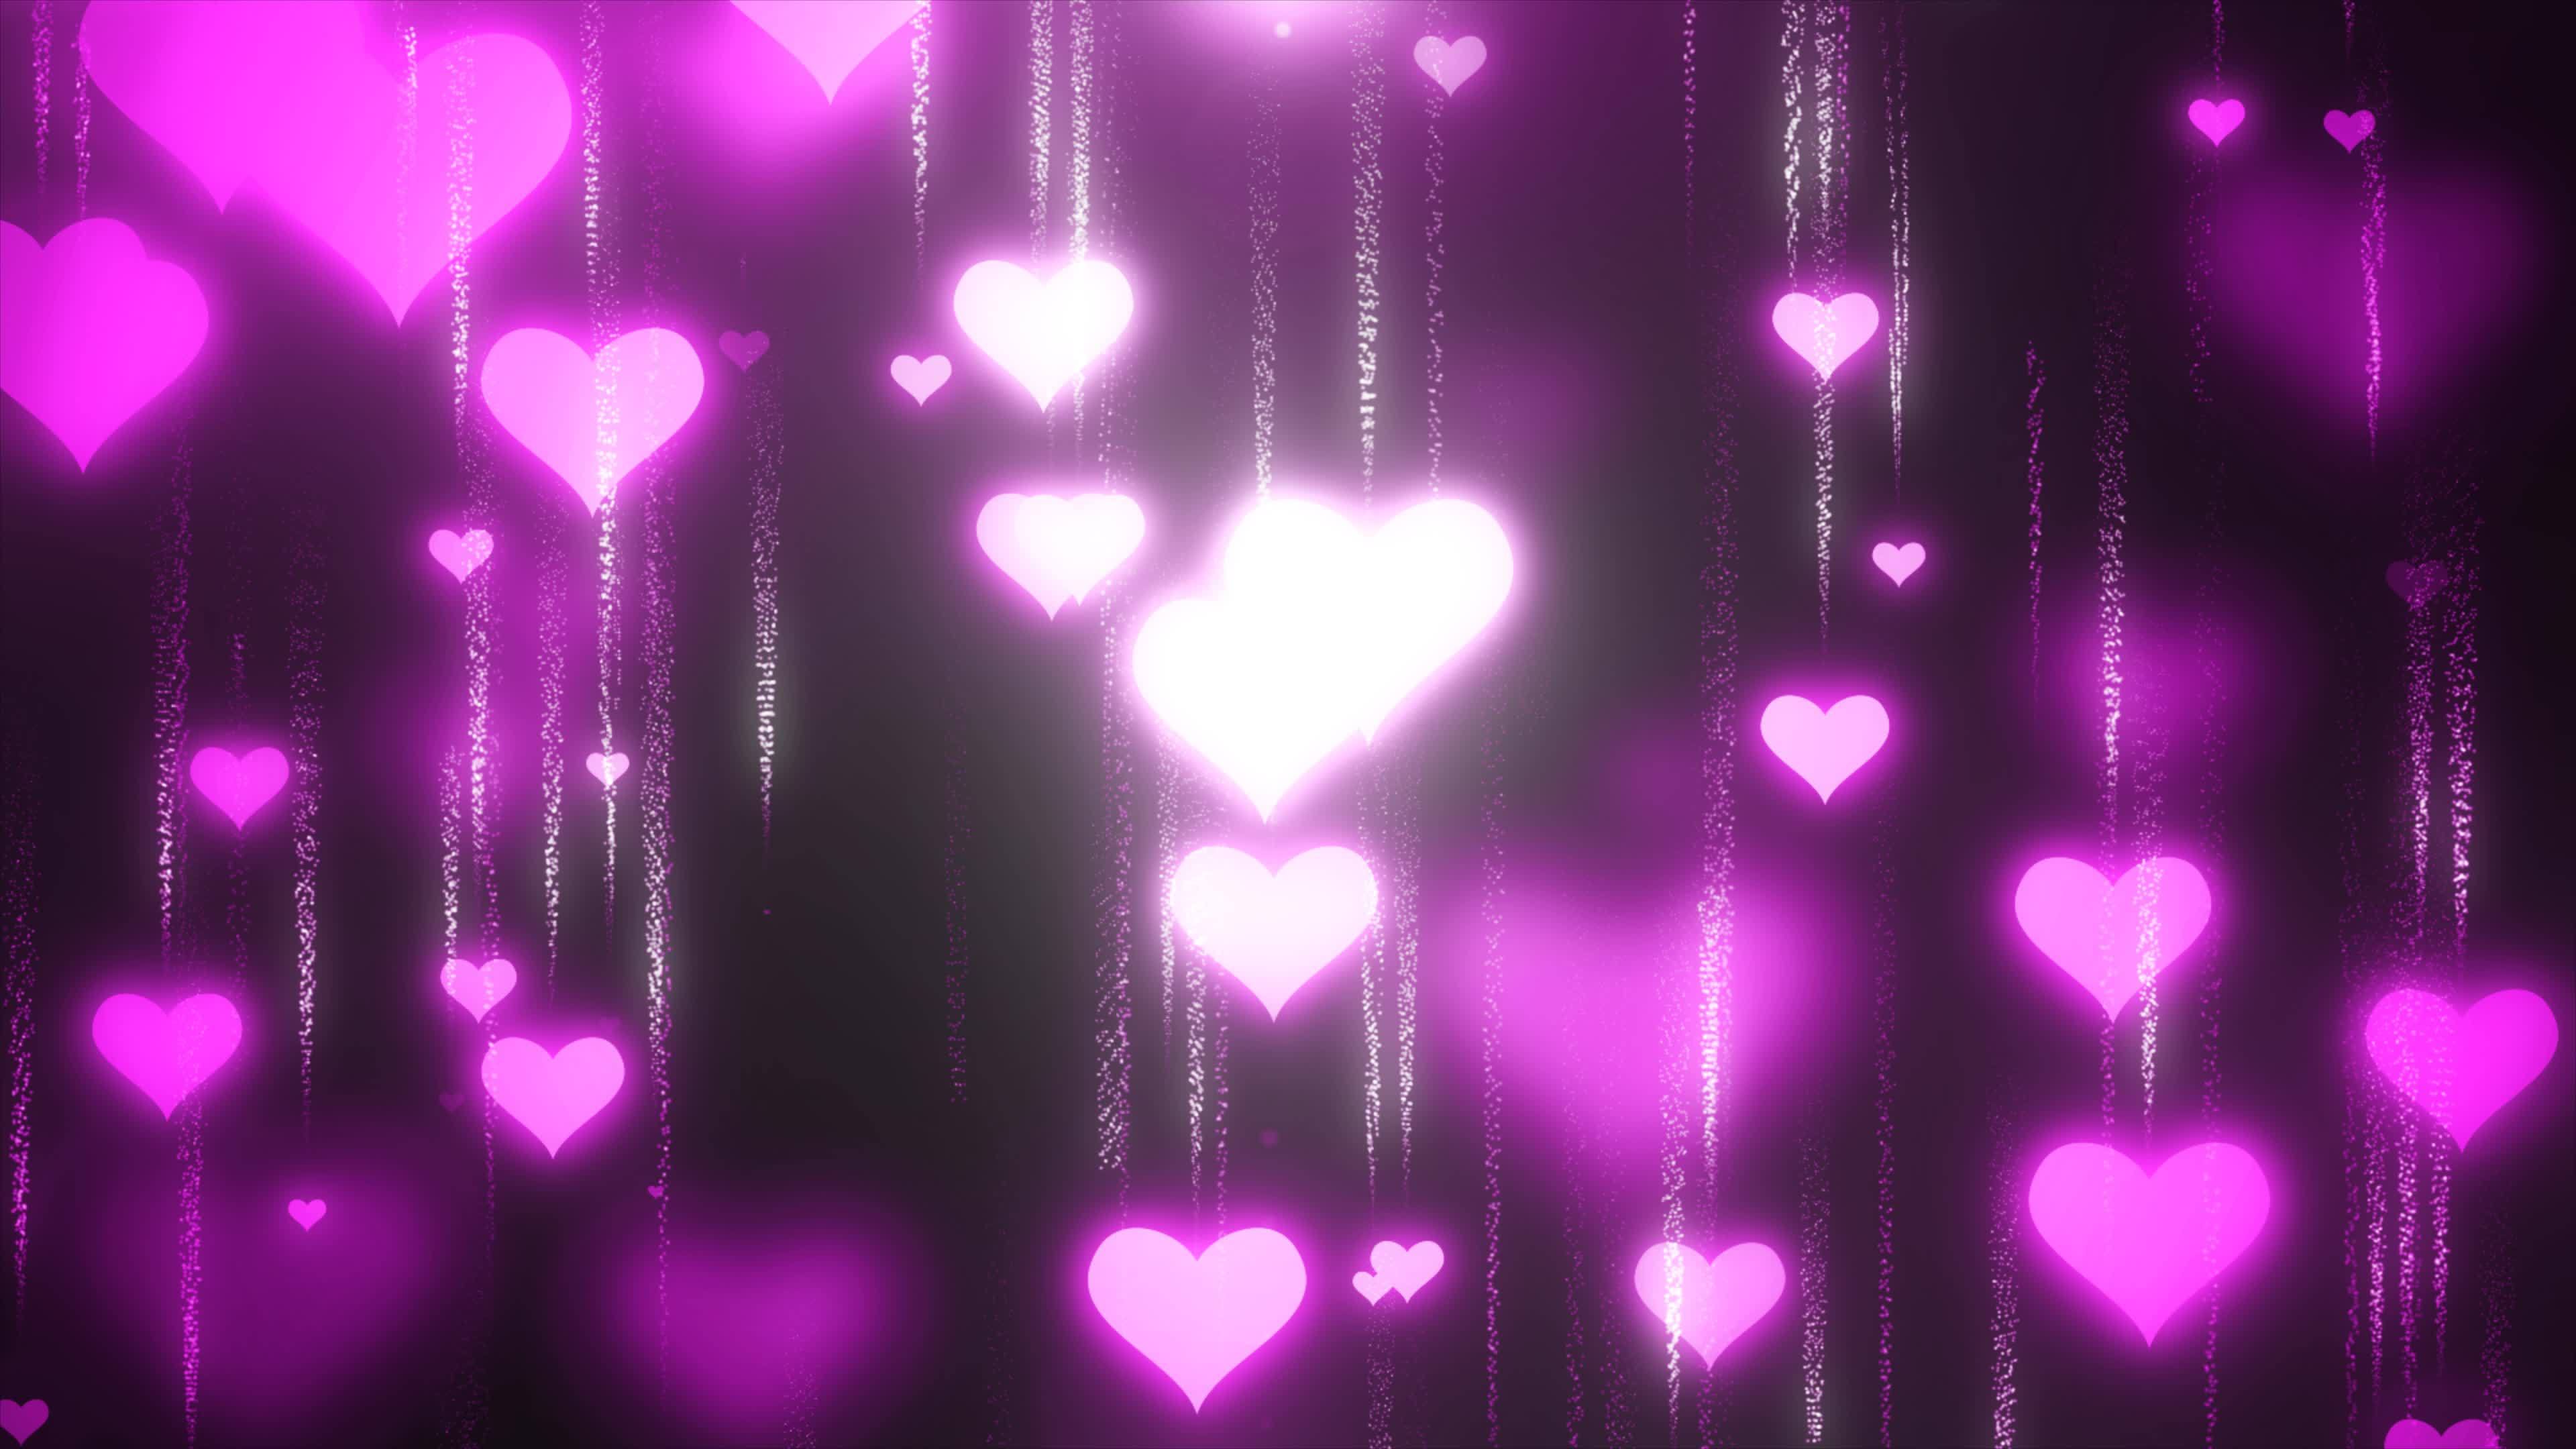 Hình nền tình yêu tím hồng - Pink purple love background Bạn đang tìm kiếm hình nền cho điện thoại hoặc máy tính của mình với ý nghĩa tình yêu đầy ngọt ngào? Xem hình ảnh về hình nền tình yêu tím hồng này để cảm nhận được sự lãng mạn và ấm áp của tình yêu.